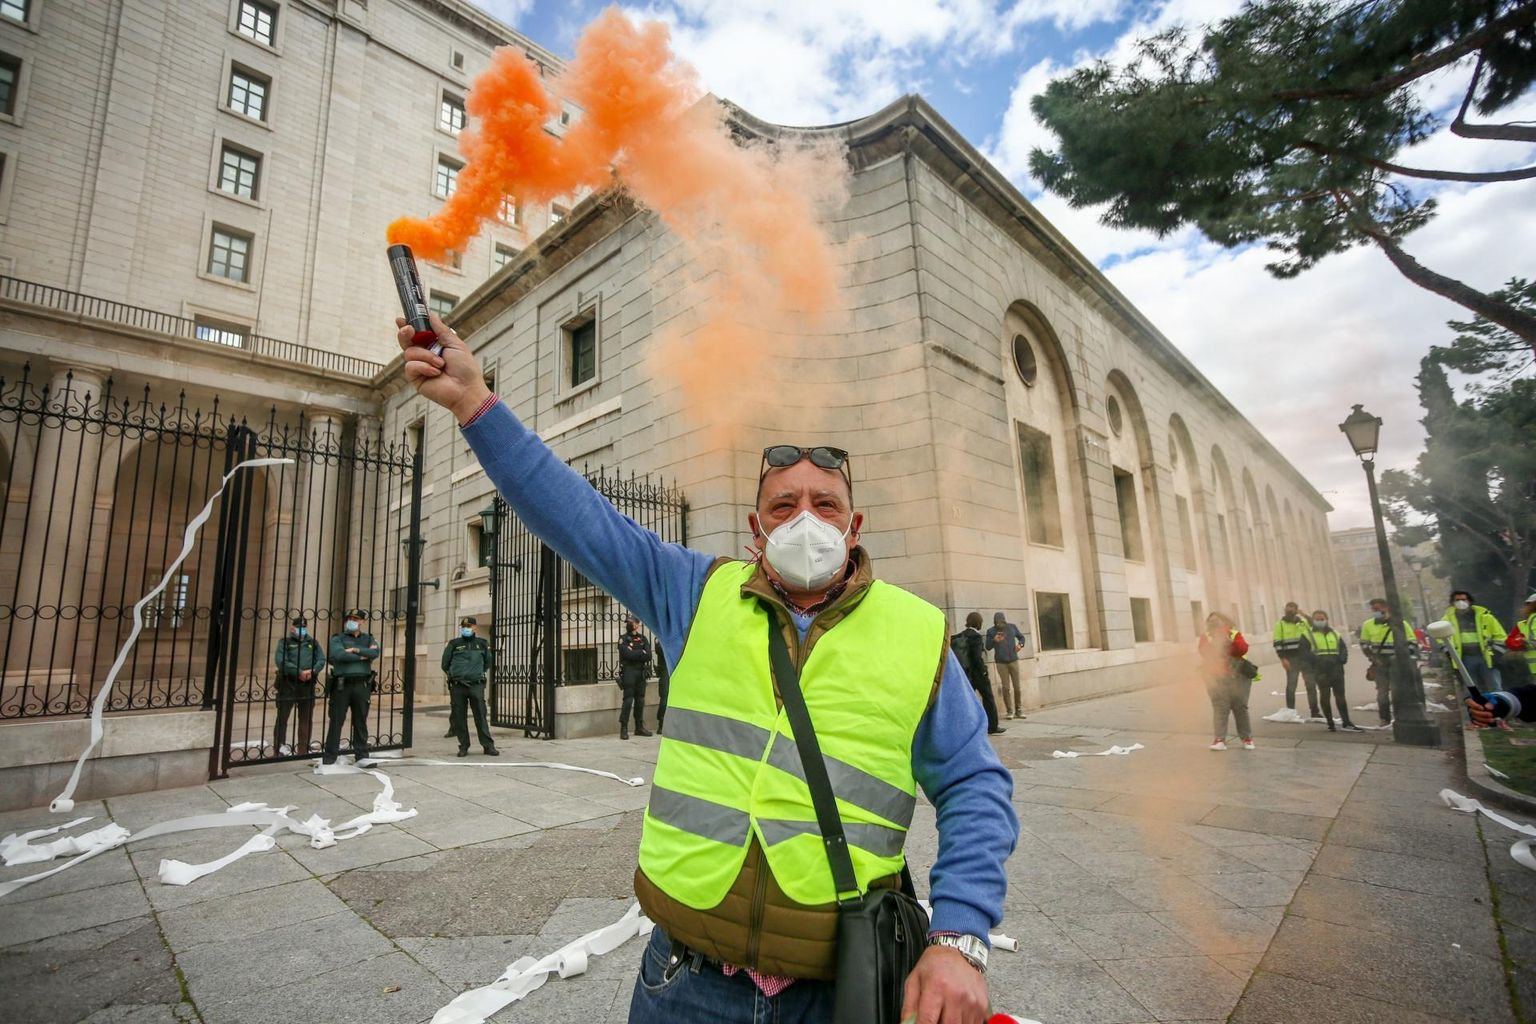 Kliimaseadused on kollaste vestidega meeleavaldajaid välja toonud mujalgi kui Prantsusmaal: pildil on Pontevedra vabrikutööline, kes protestis märtsis Hispaania roheülemineku plaanide vastu. FOTO: Ricardo Rubio/Scanpix